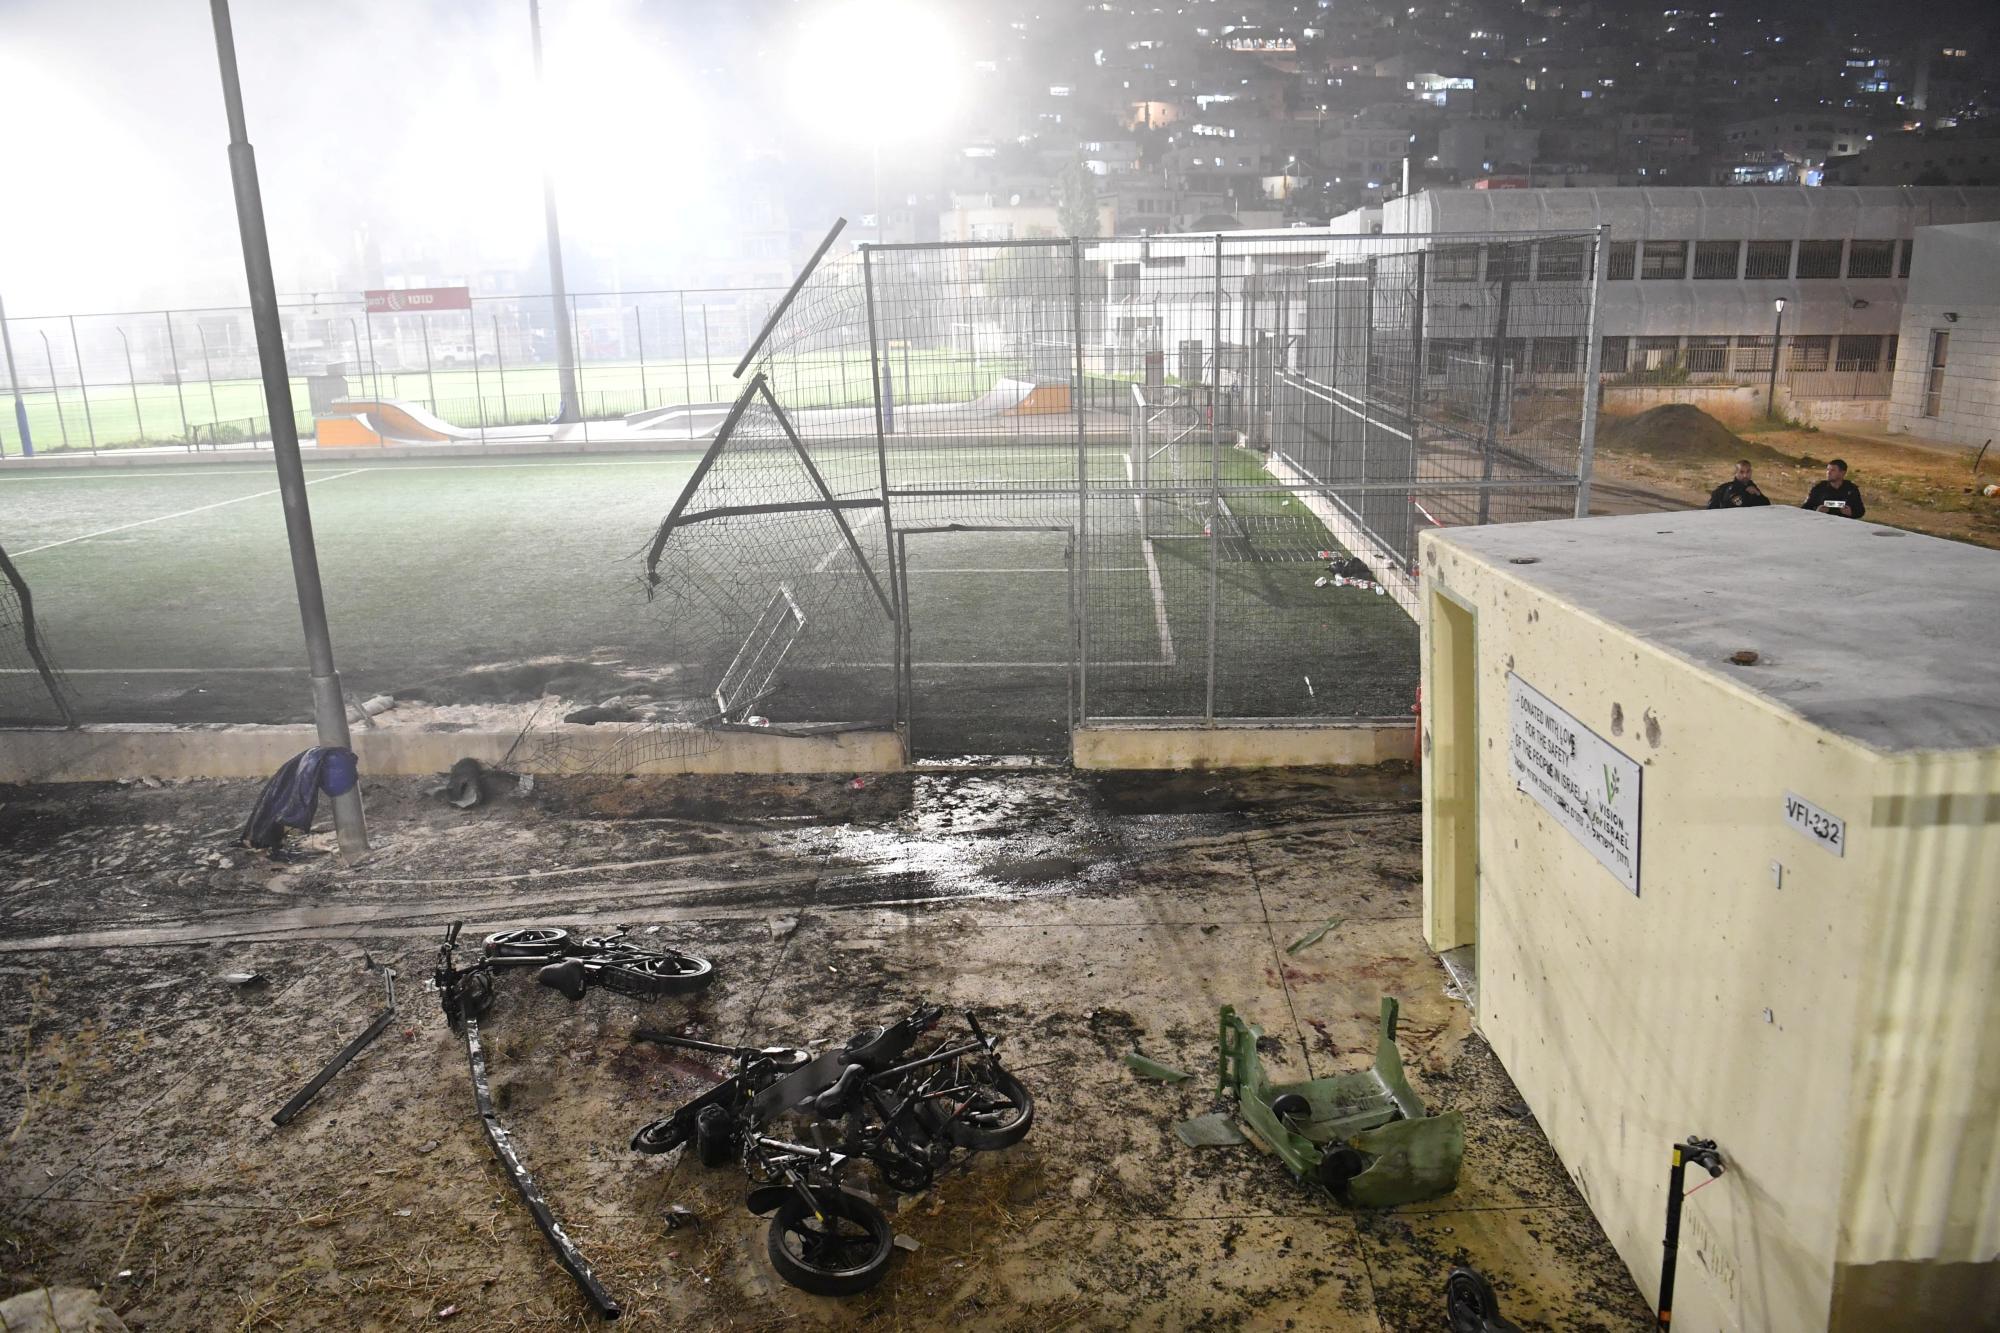 Rakete aus Libanon trifft Fußballplatz: Mindestens zehn tote Kinder und Jugendliche